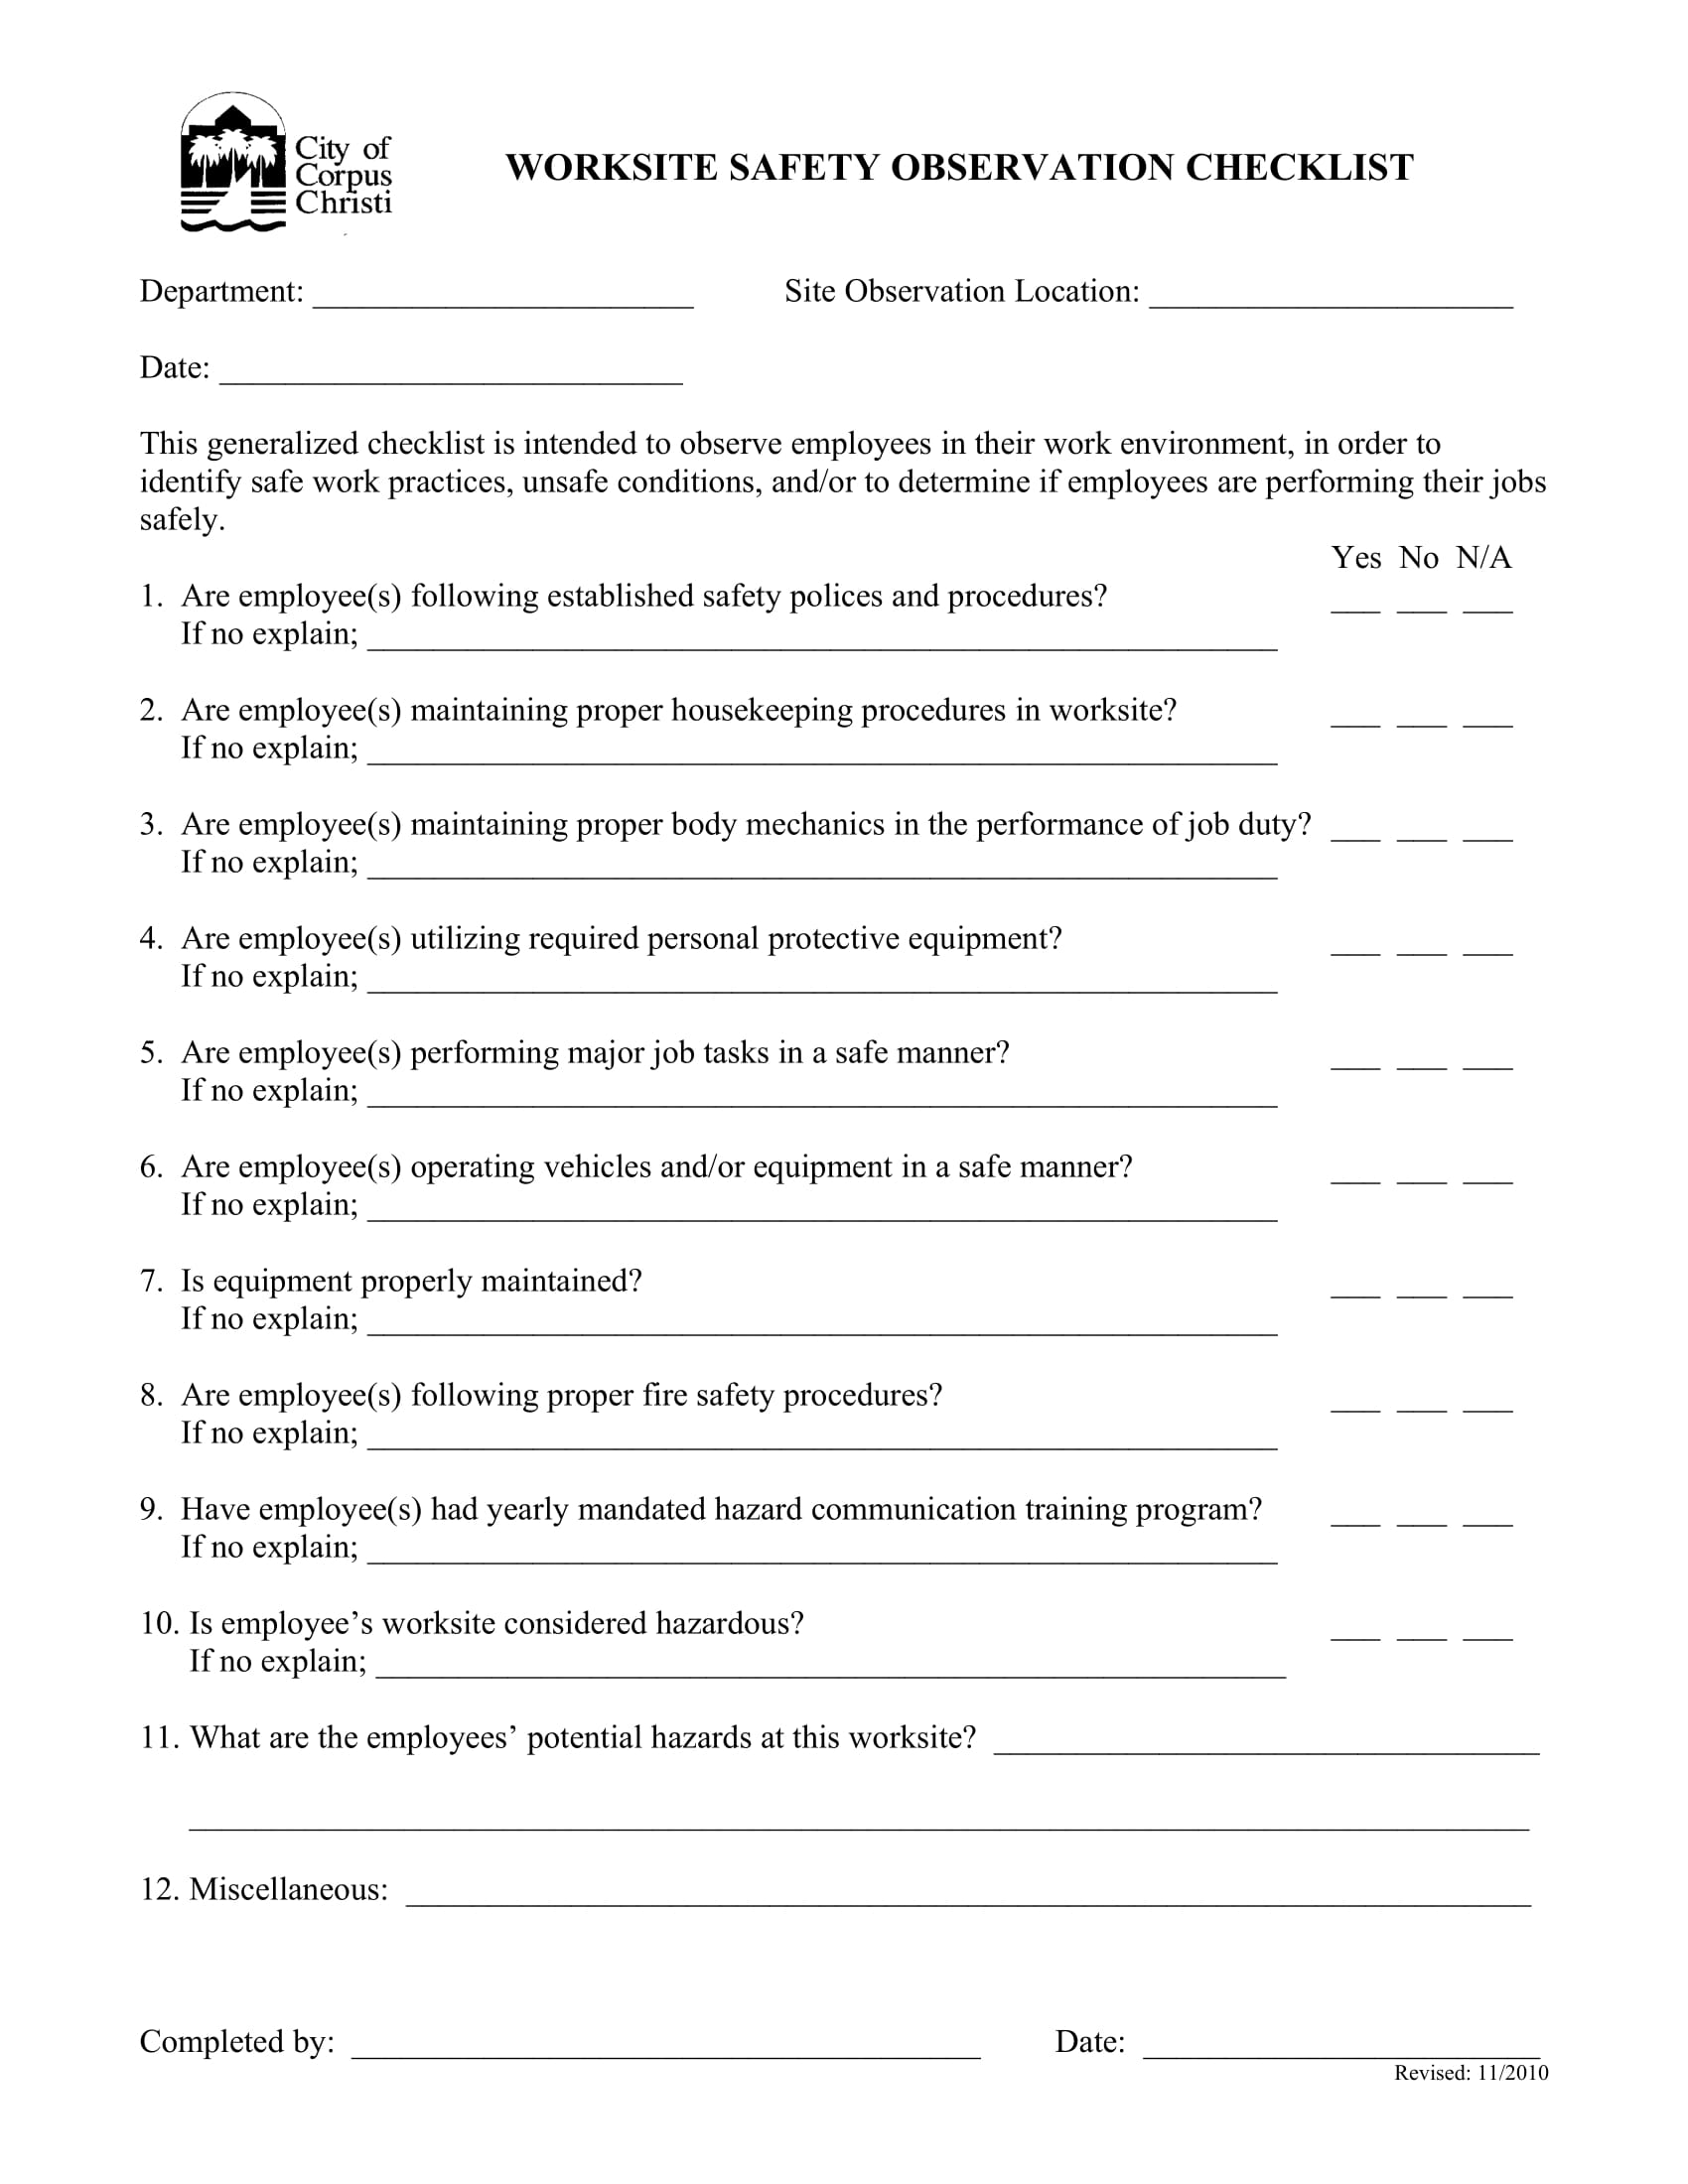 job worksite safety observation checklist form 1